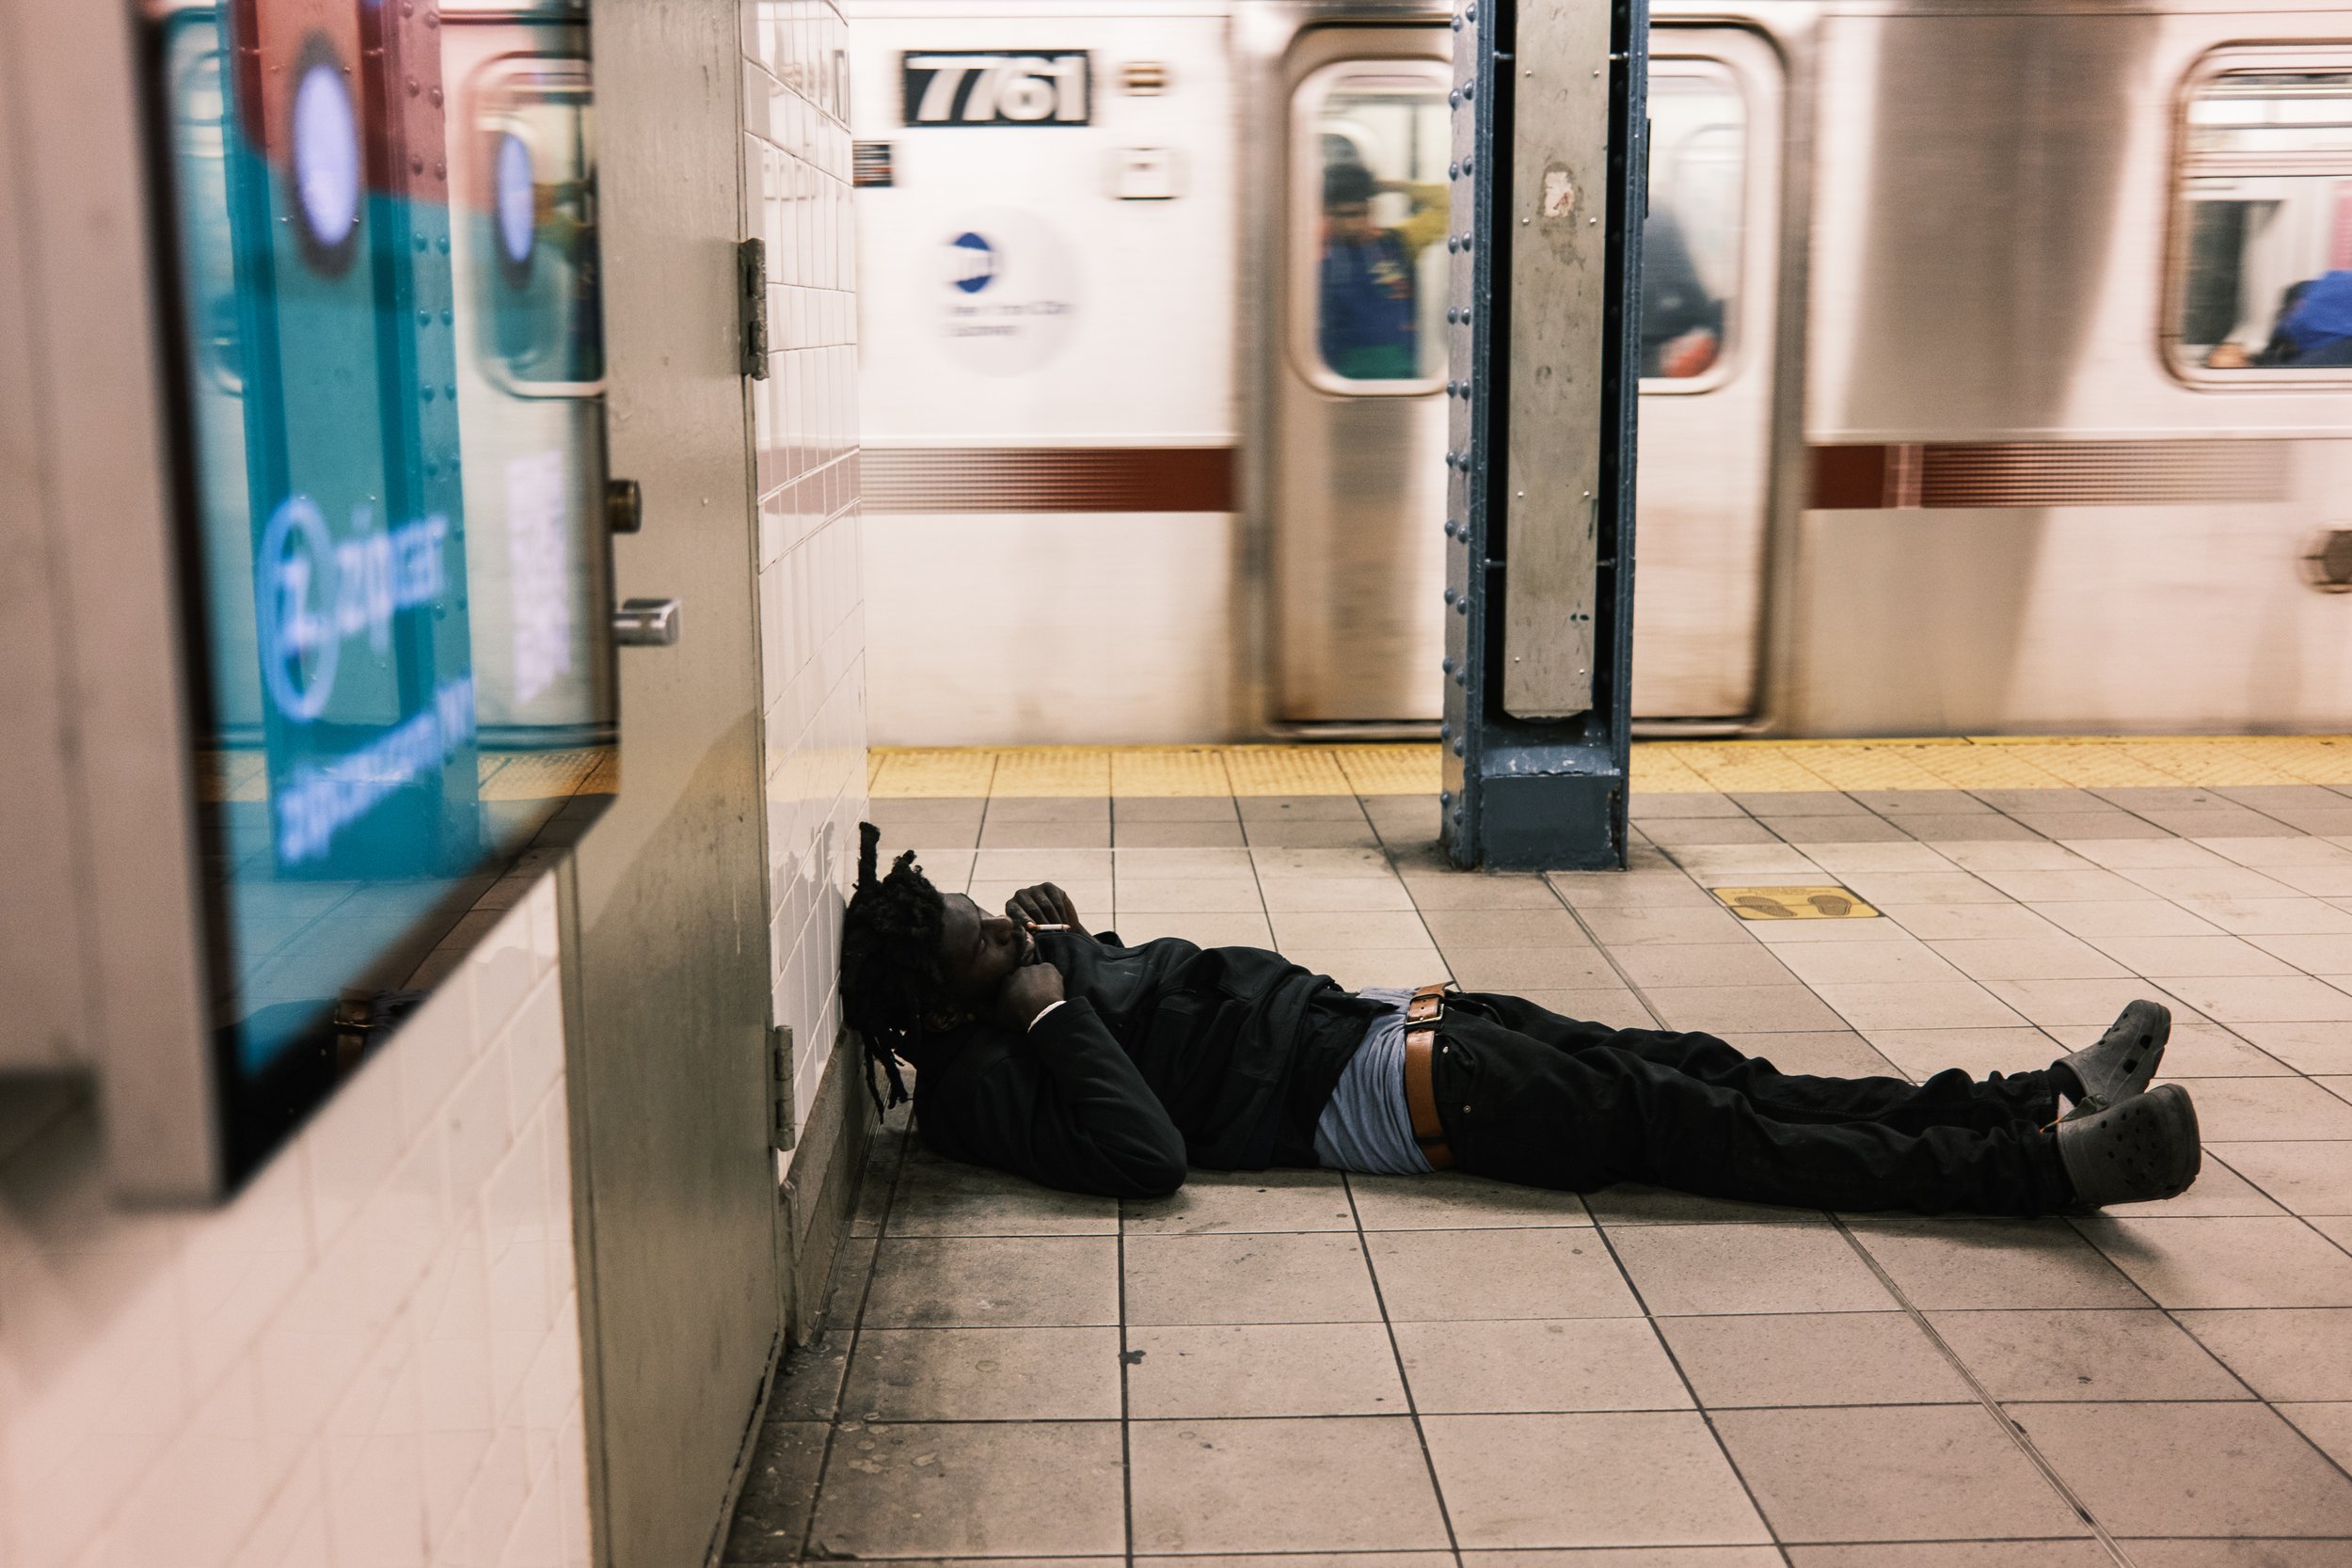 221012 Yang_NYP - Subways-5.jpg